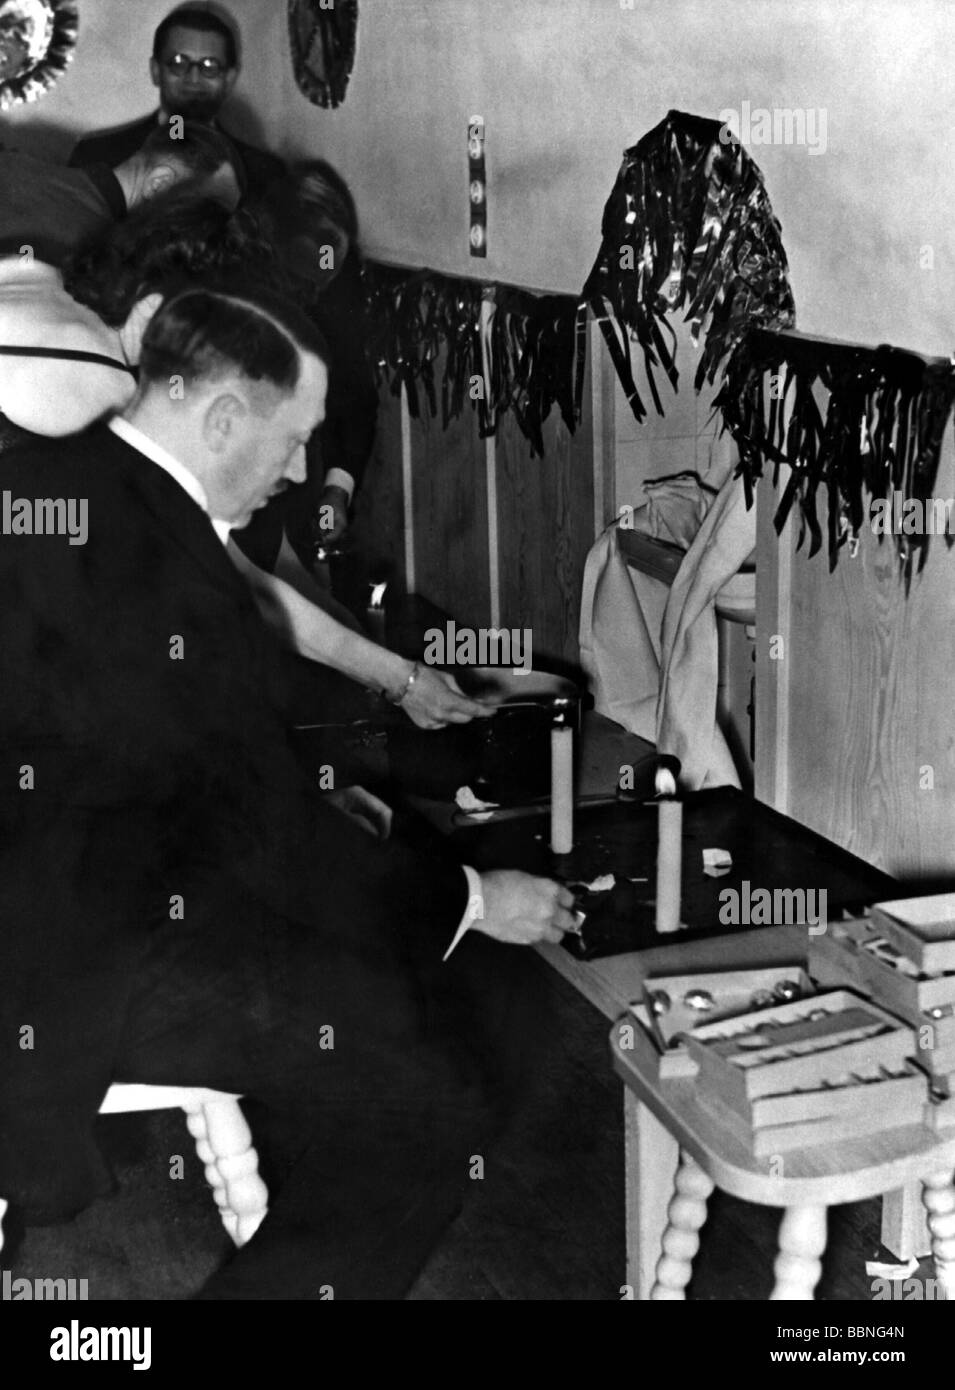 Hitler, Adolf, 20.4.1889 - 30.4.1945, político alemán (NSDAP), Führer y Canciller del Reich desde 1933, duración media, celebración de Nochevieja, plomo de lanzamiento, foto de Eva Braun, Foto de stock